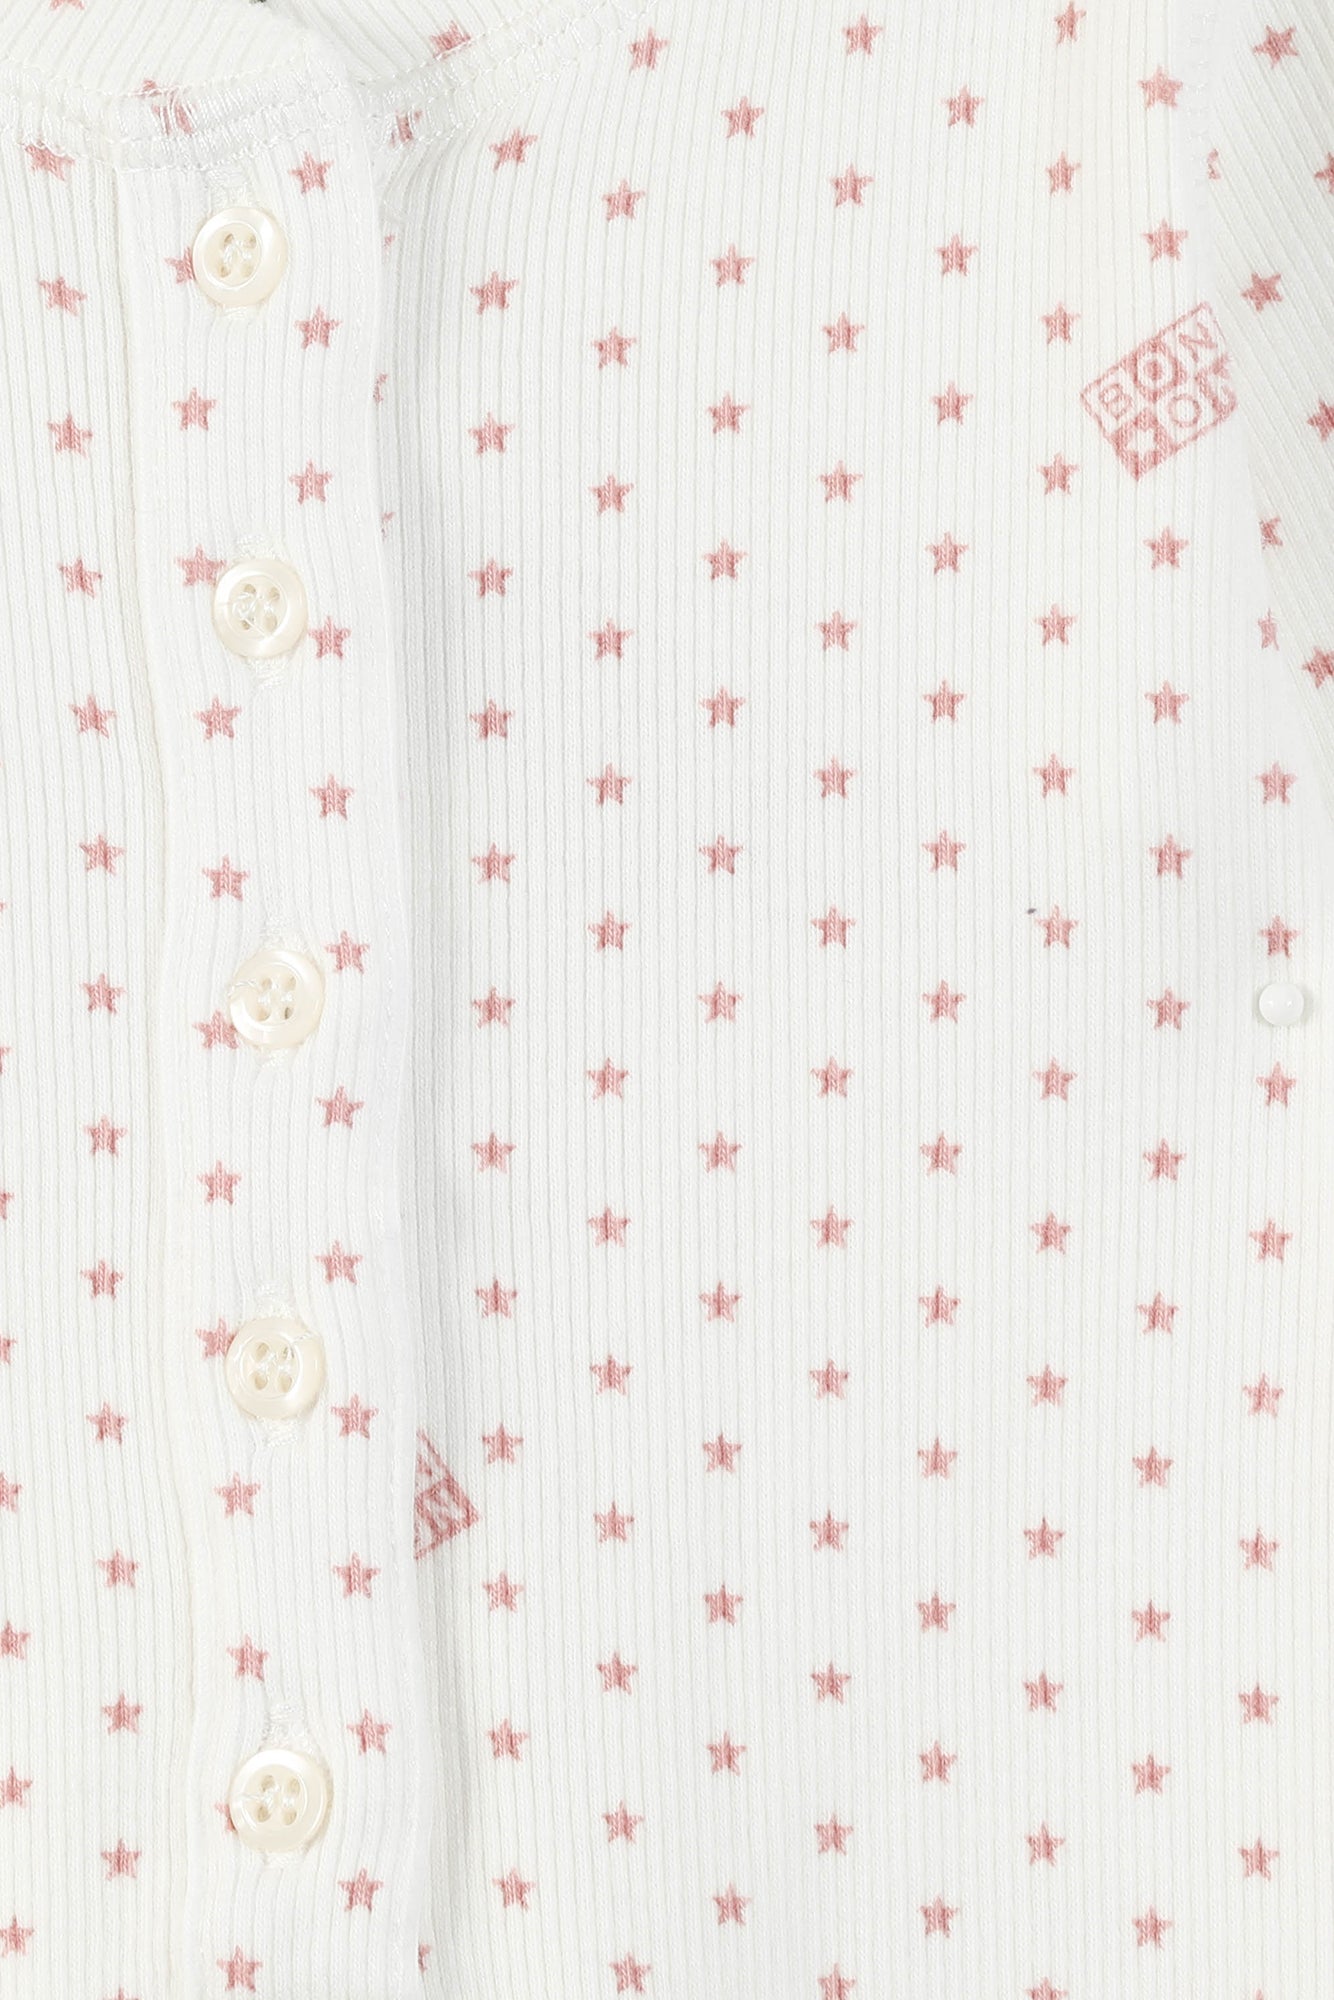 Pyjama bébé coton côtelé semi d'étoiles